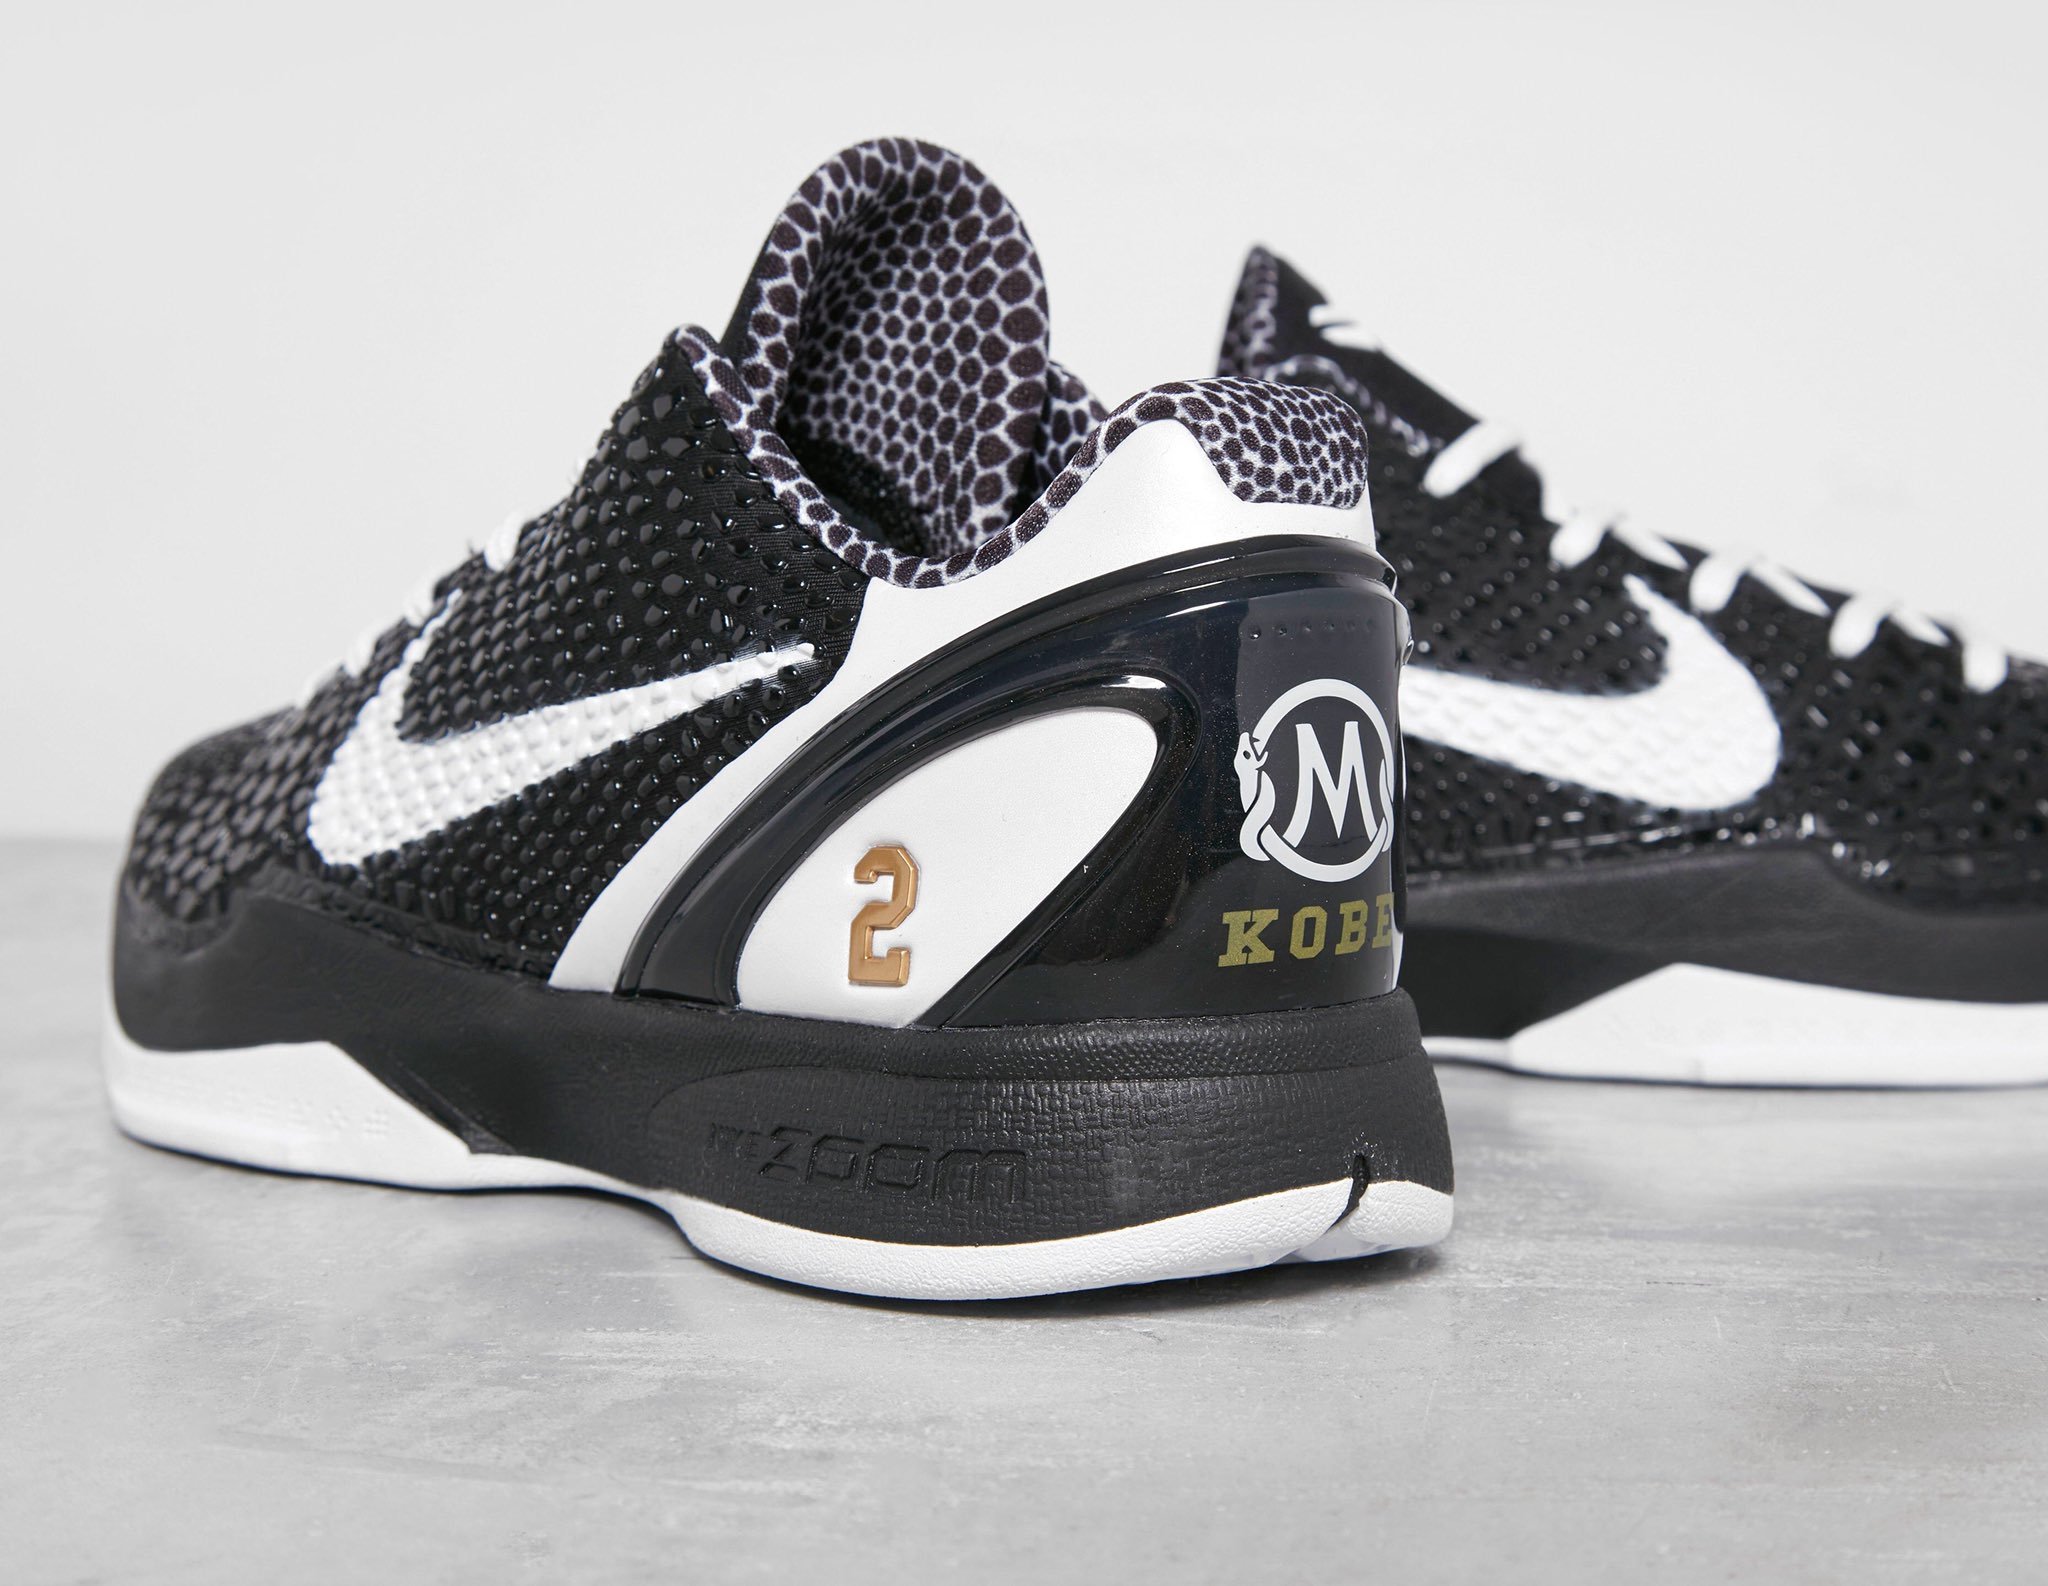 Nike Kobe 6 Protro "Mamba Forever" Release Date Nice Kicks